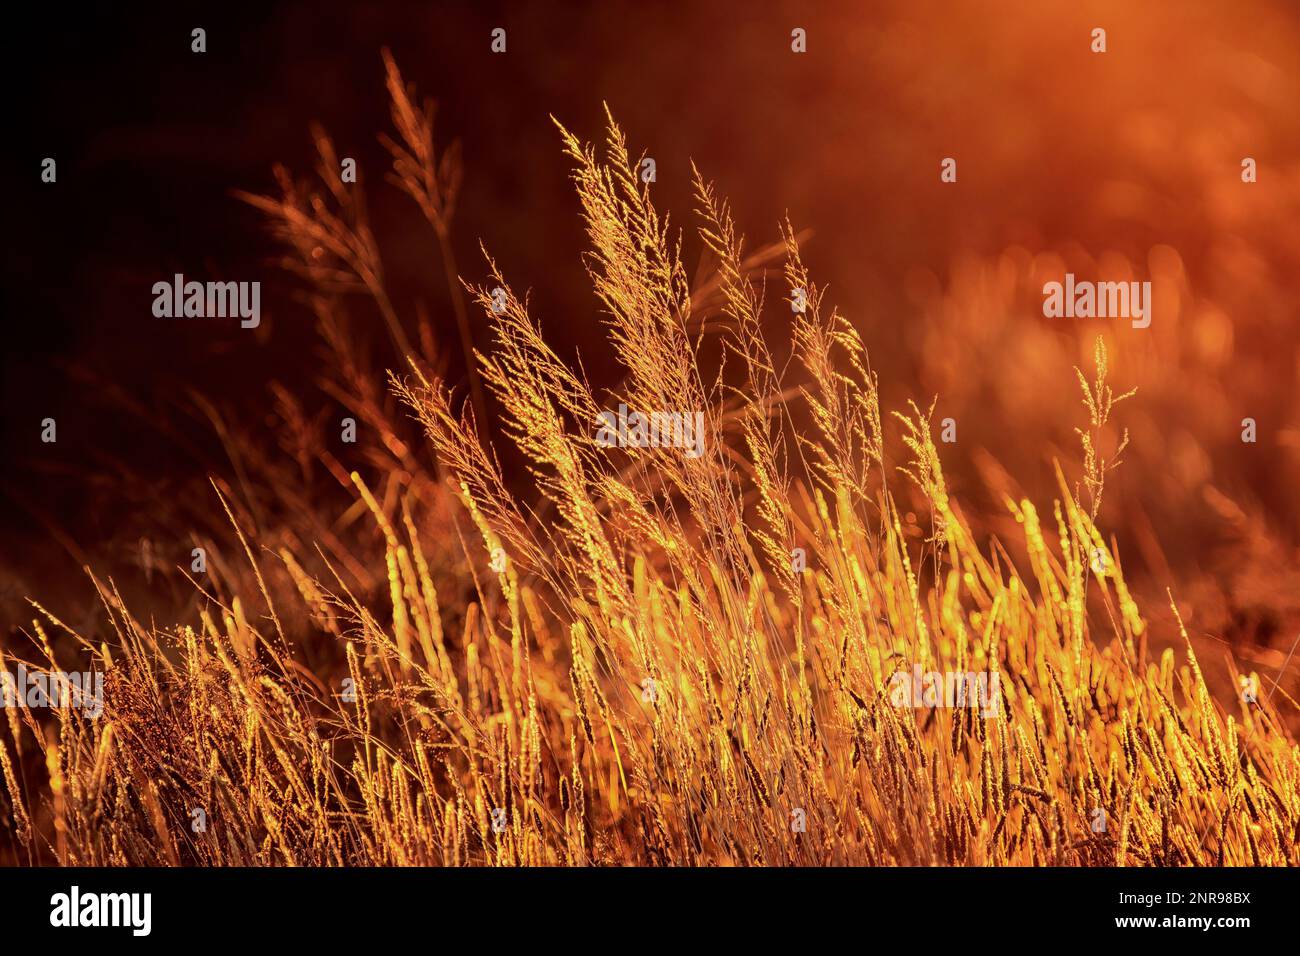 Goldenes Gras, das im warmen Licht des Sonnenaufgangs glüht Stockfoto